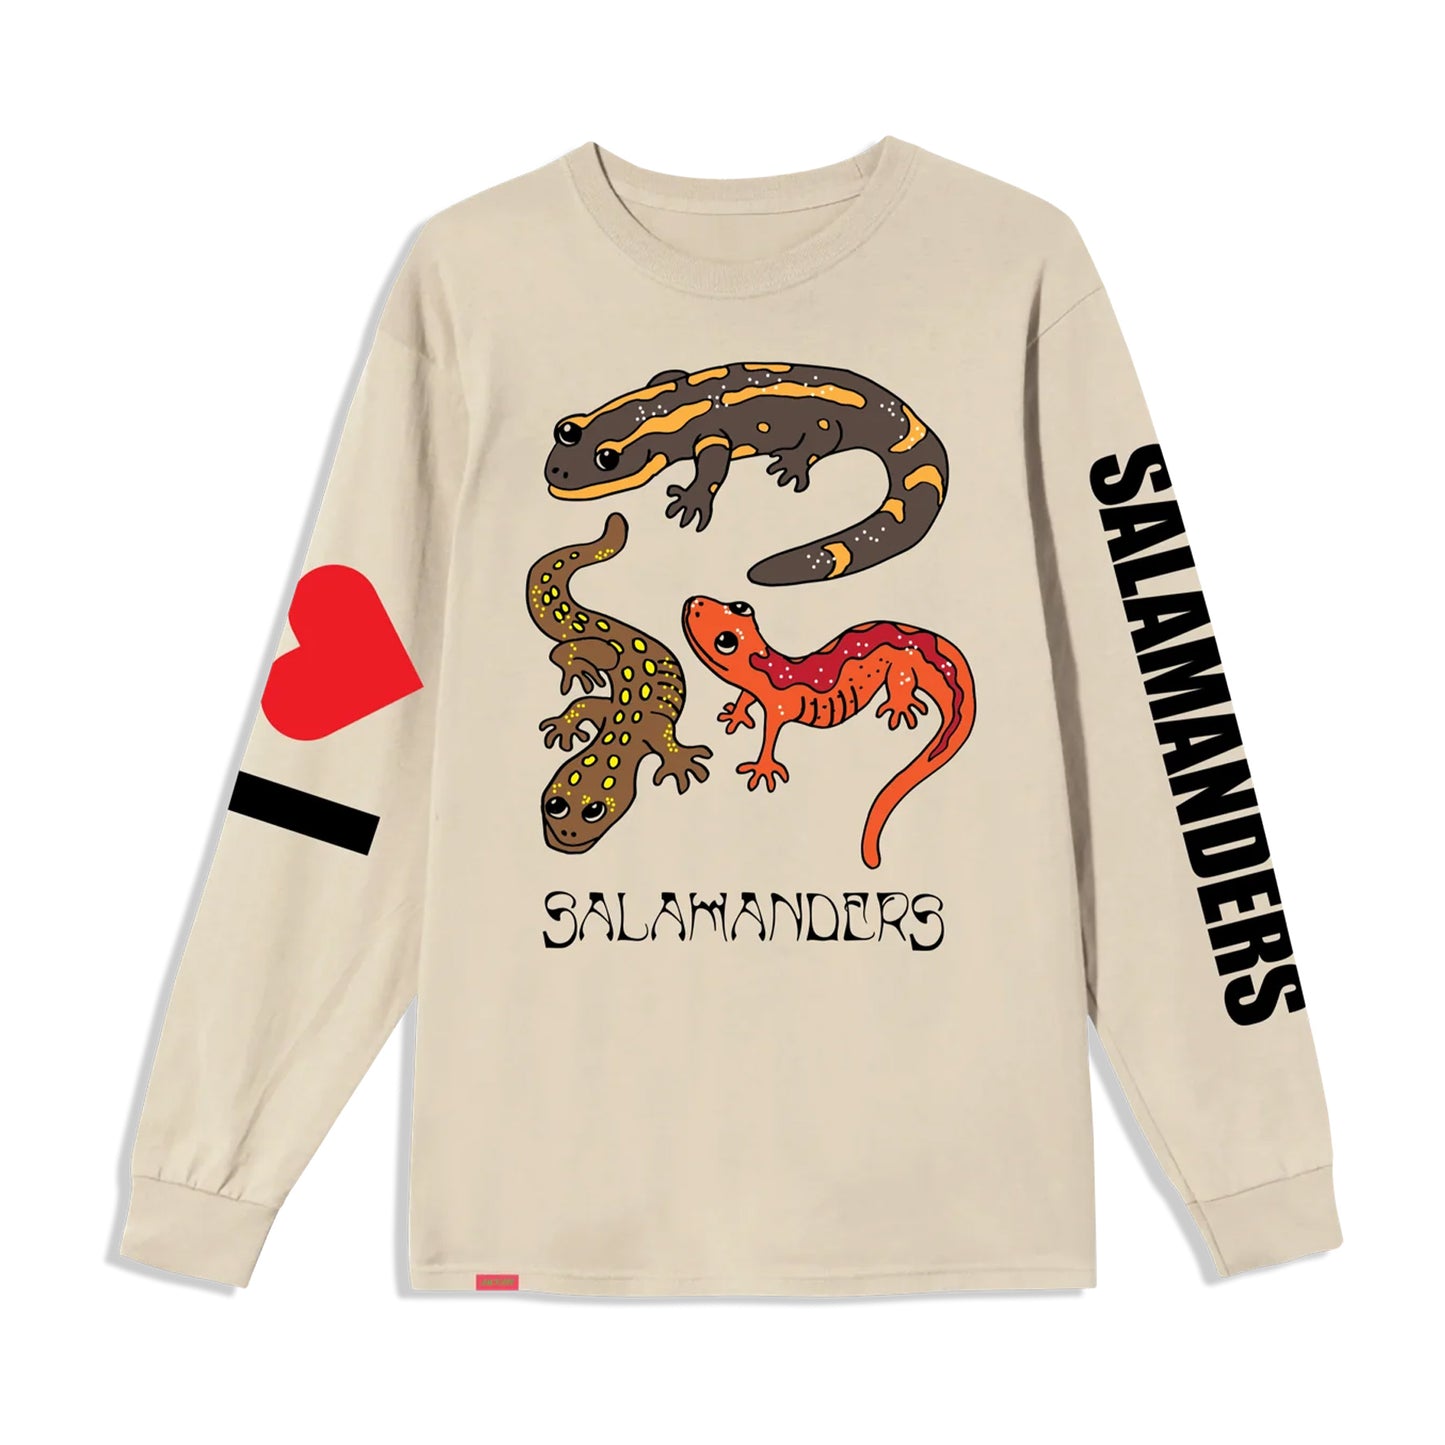 JACUZZI UNLIMITED - Salamander L/S Shirt - Sand